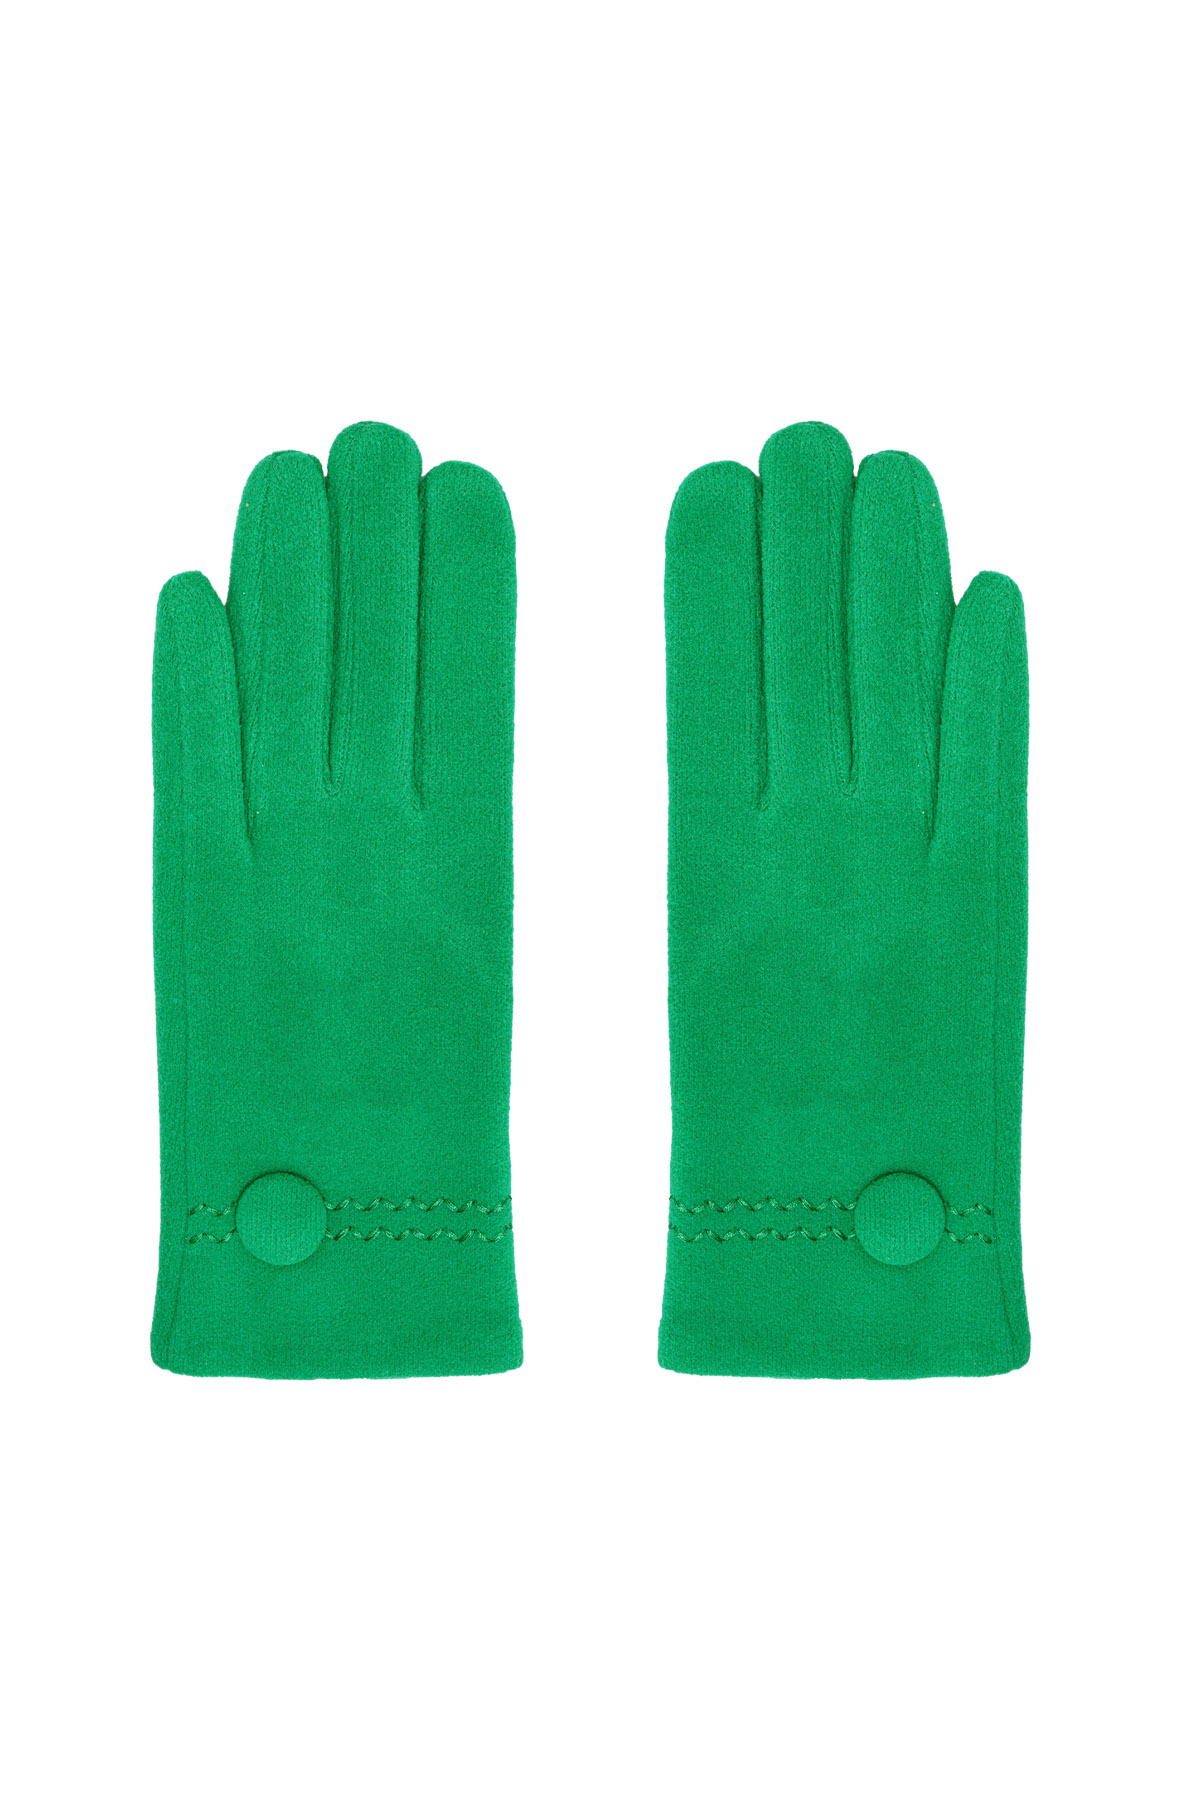 Handschuhe mit Knopf - grün